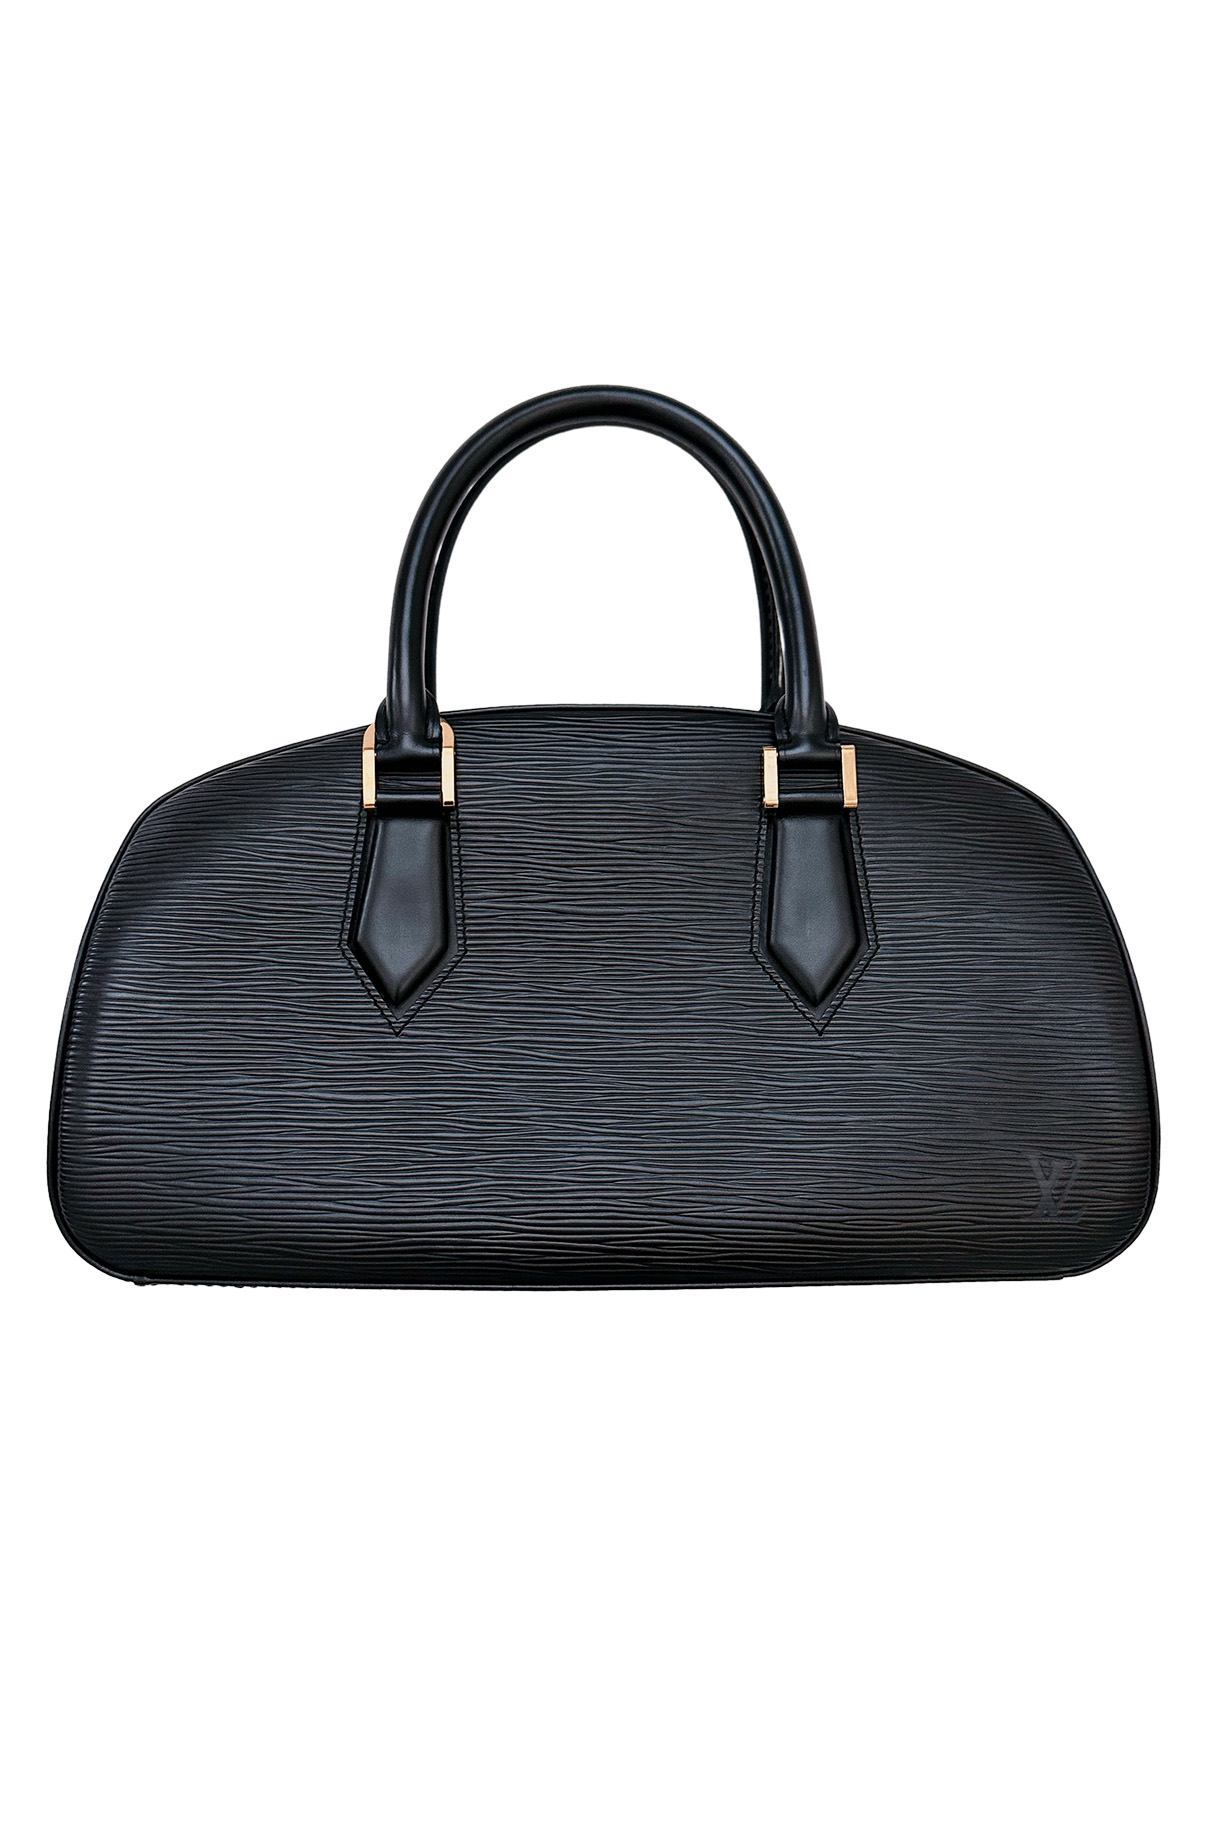 Louis Vuitton Vintage - Epi Alma PM Bag - Black - Leather and Epi